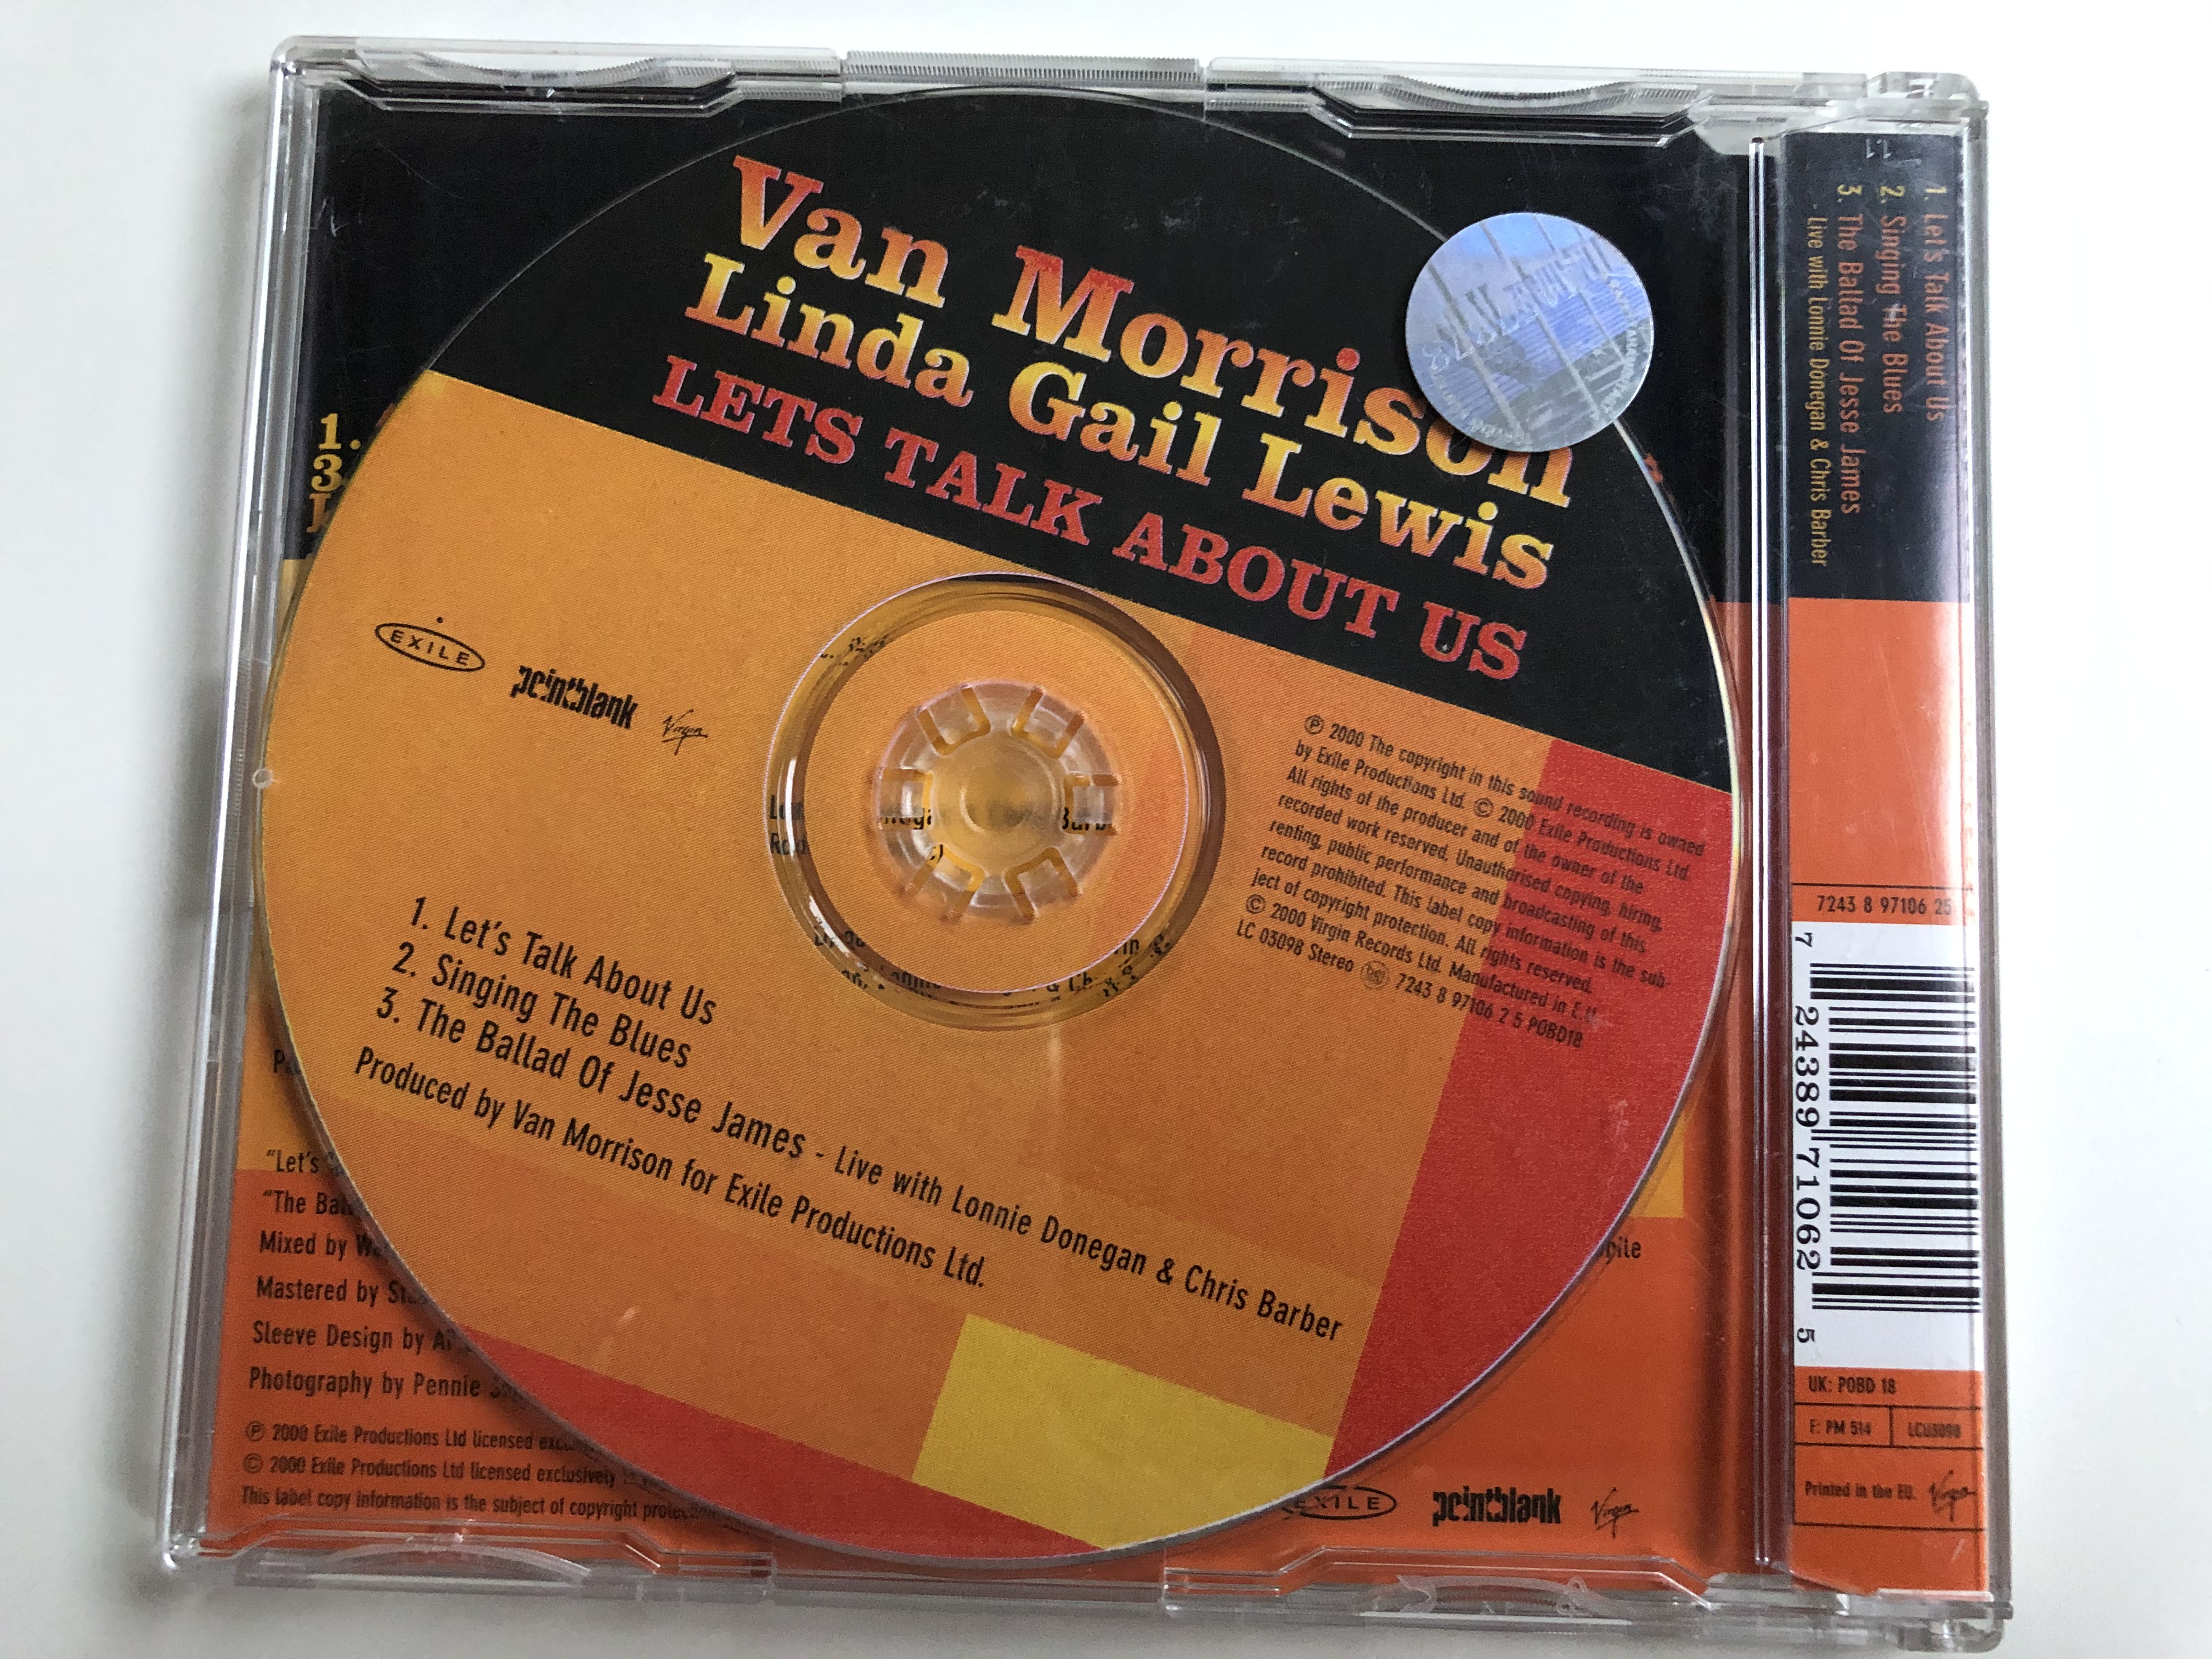 van-morrison-linda-gail-lewis-let-s-talk-about-us-exile-audio-cd-2000-stereo-724389710625-2-.jpg